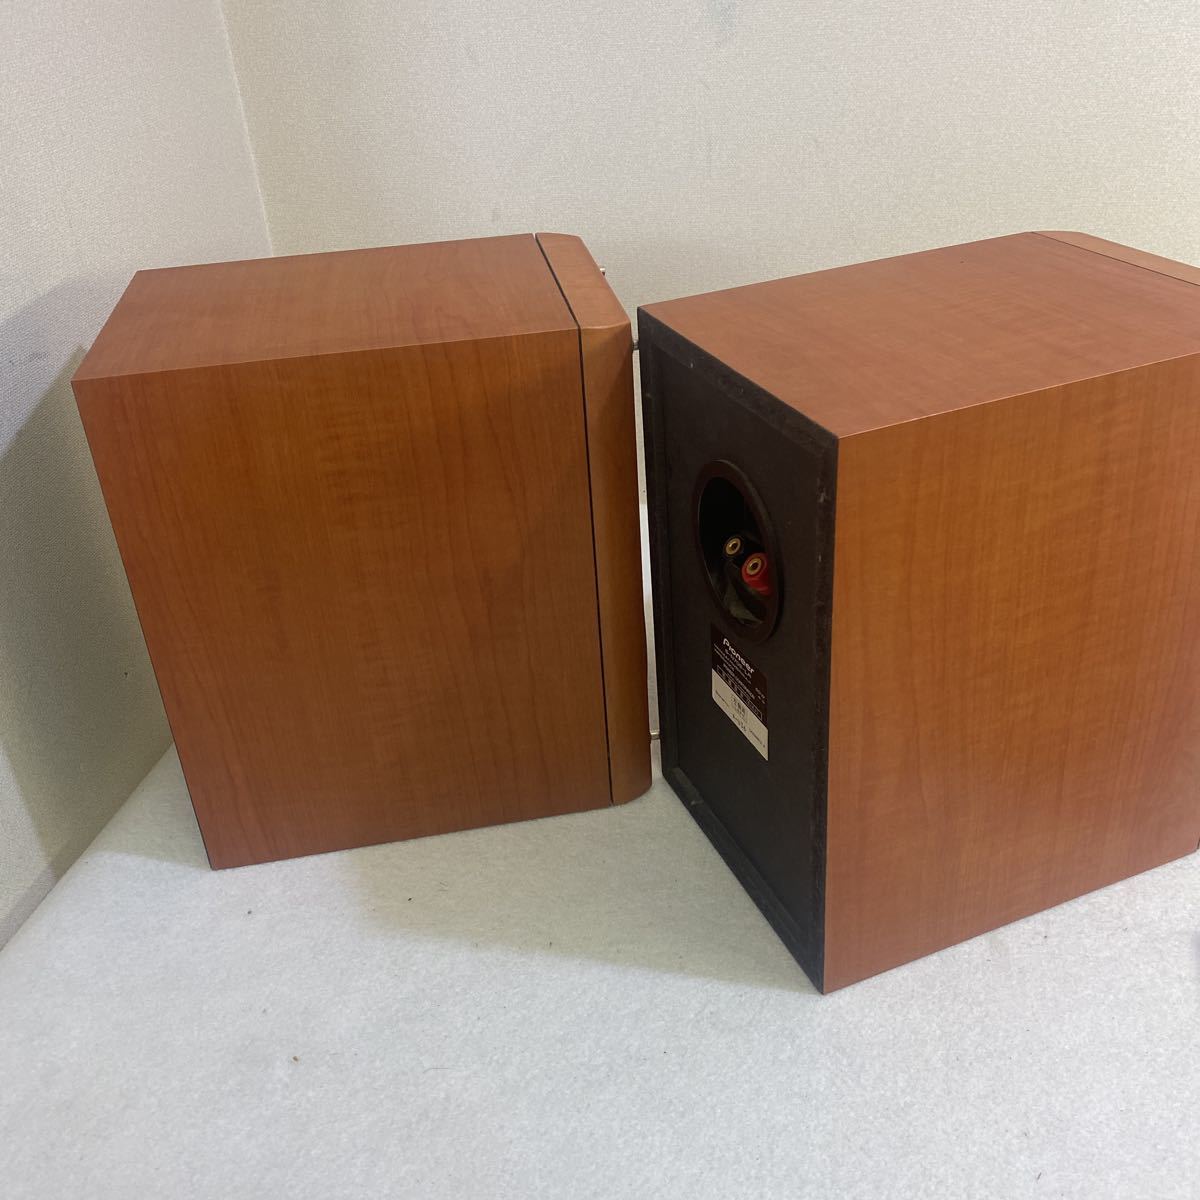 PIONEER Pioneer S-N702-LR speaker system used operation goods 